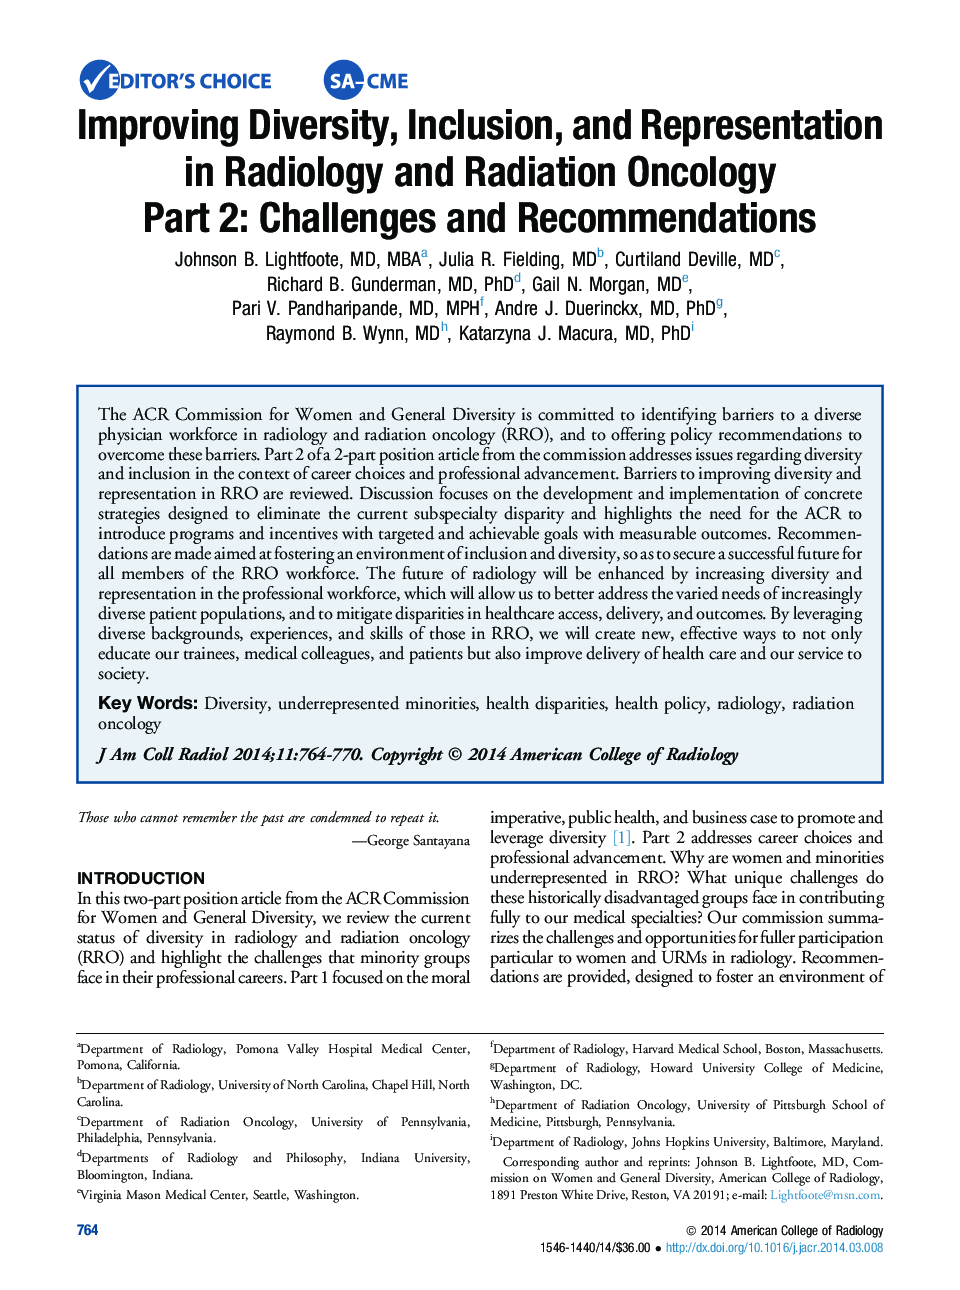 بهبود تنوع، مشارکت و نمایندگی در رادیولوژی و رادیولوژی انکولوژی بخش 2: چالش ها و توصیه ها 